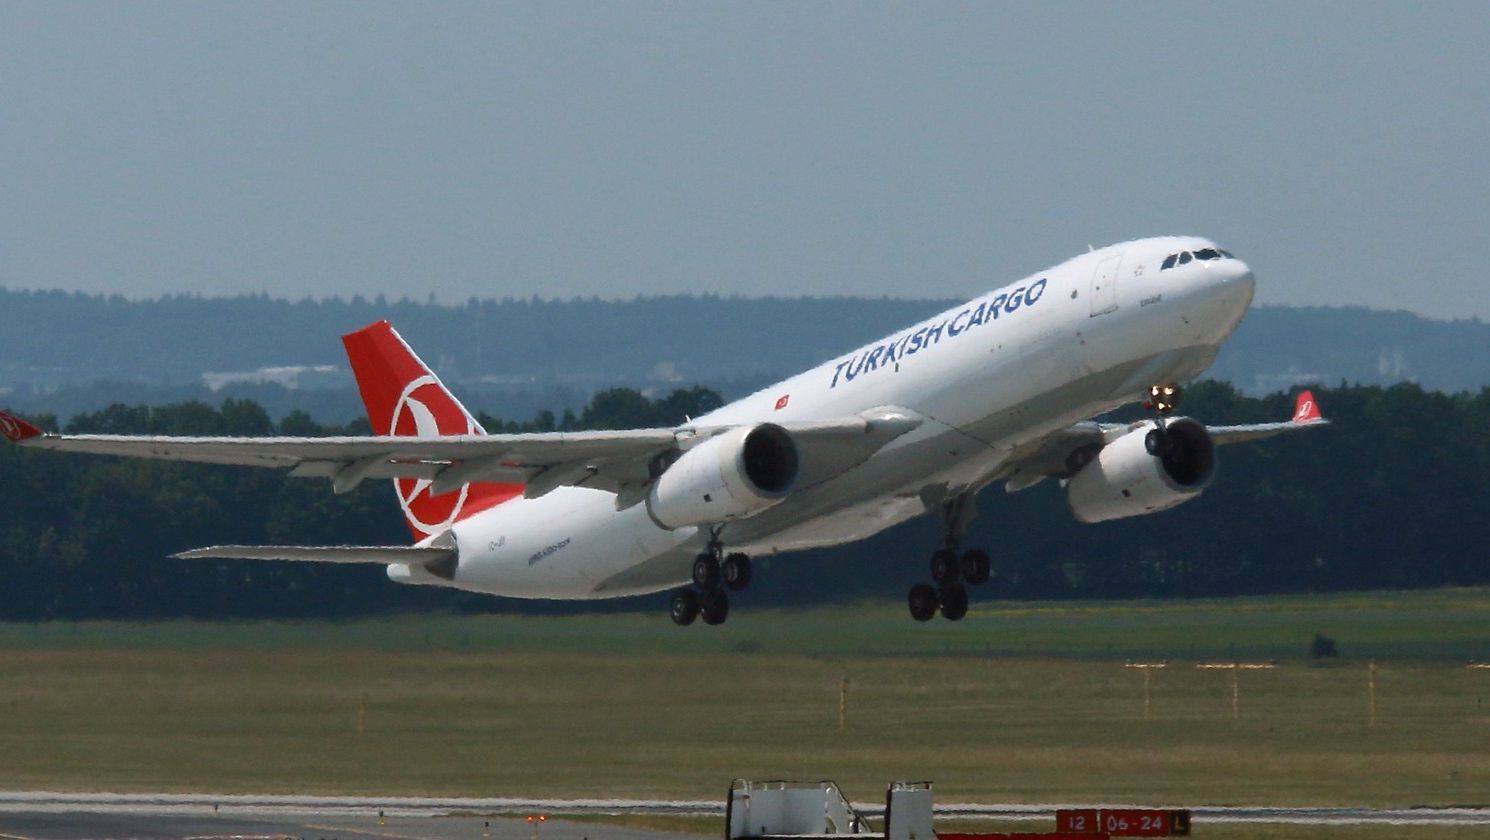 Турецкий транспортный самолет. Фото: (сс) @kitmasterbloke, flickr.com